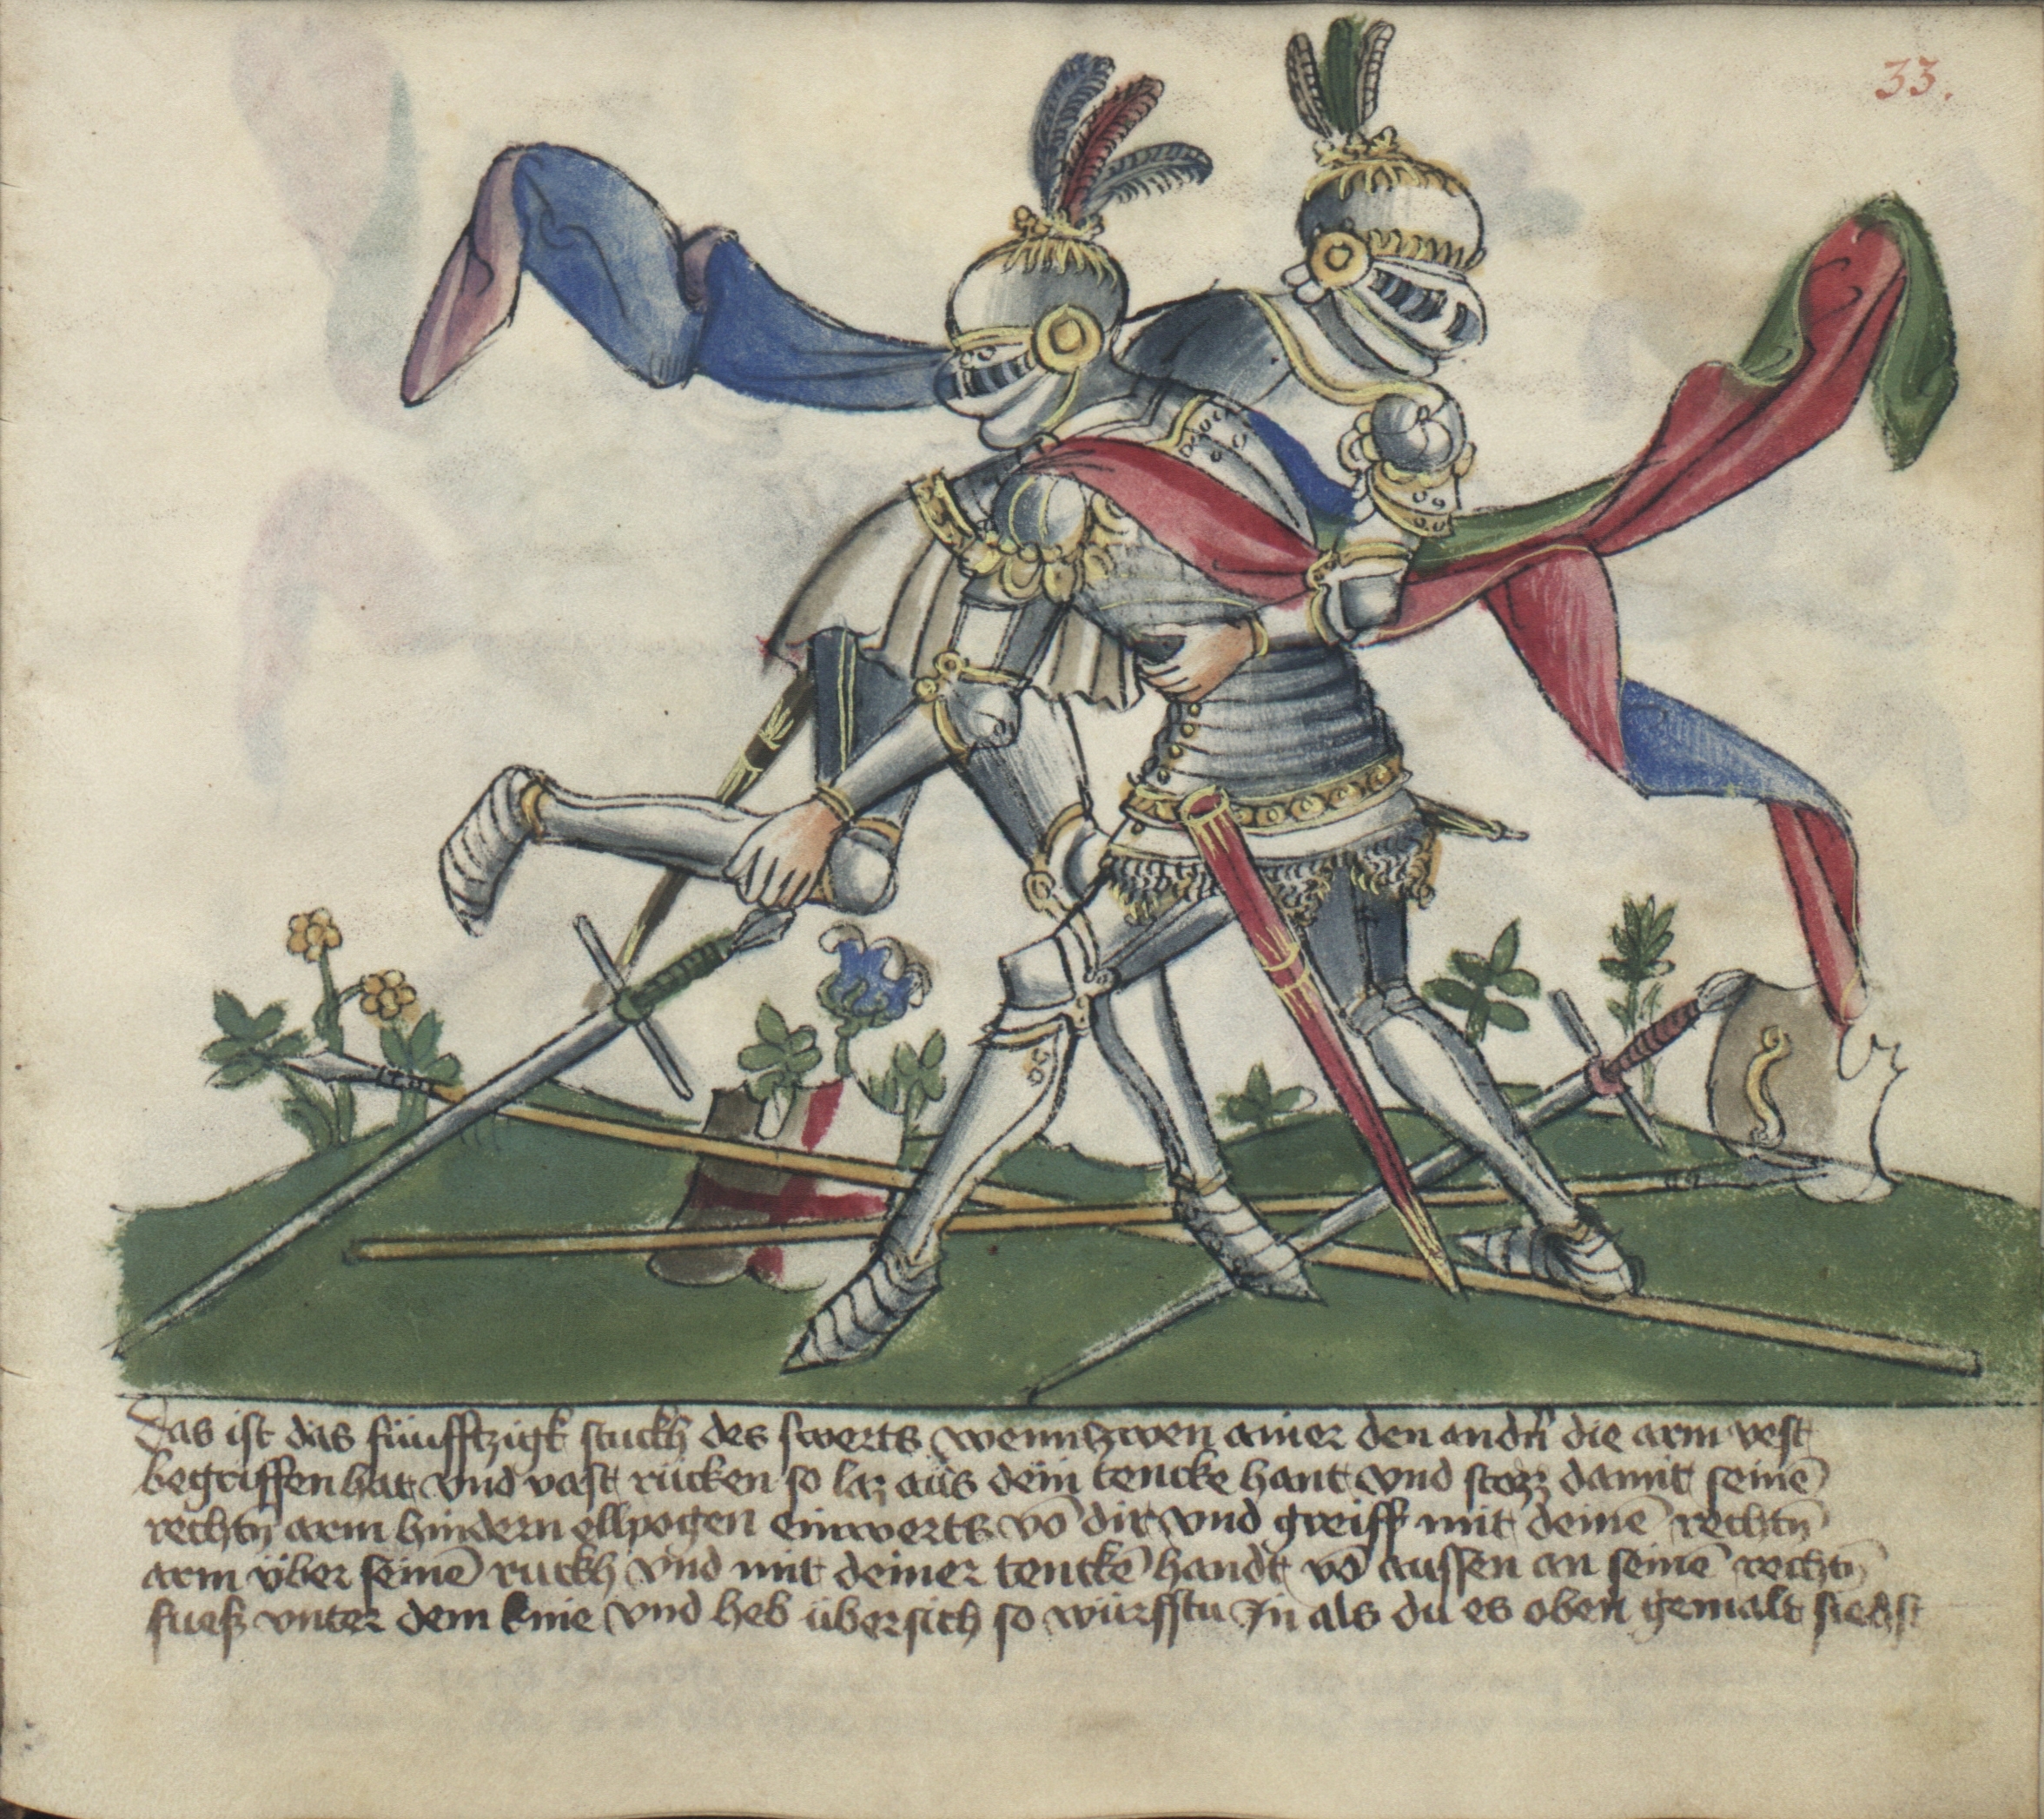 Spätmittelalterliche Fechtbücher zeigen den dynamischen Kampf in Plattenrüstung (Krakau, Biblioteka Jagiellońska, MS Germ.Quart.16, fol. 33r).